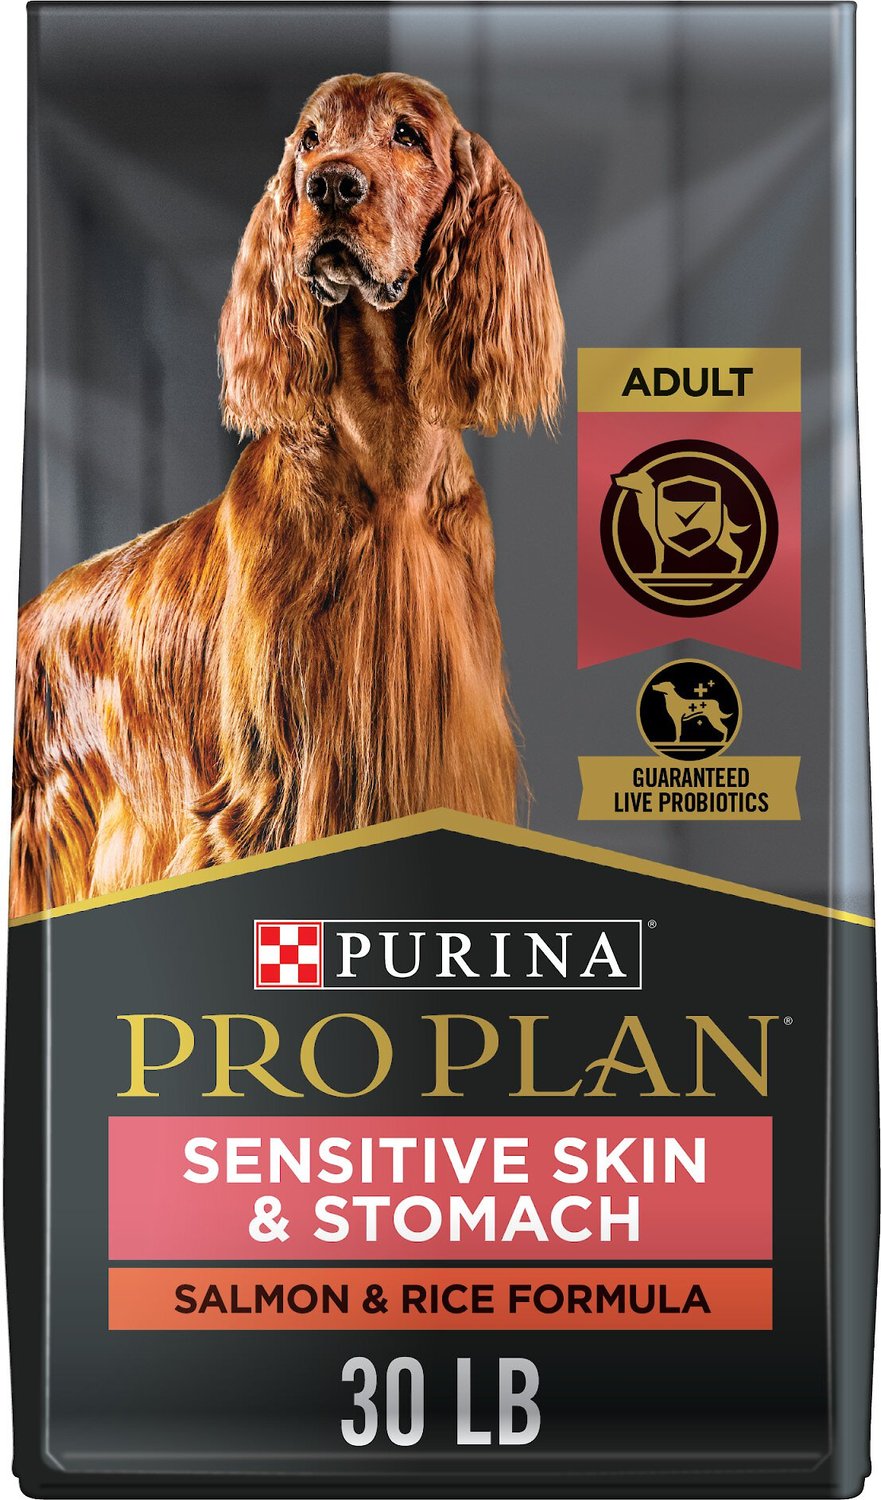 Purina Pro Plan Cibo per cani ad alto contenuto proteico per pelle e stomaco